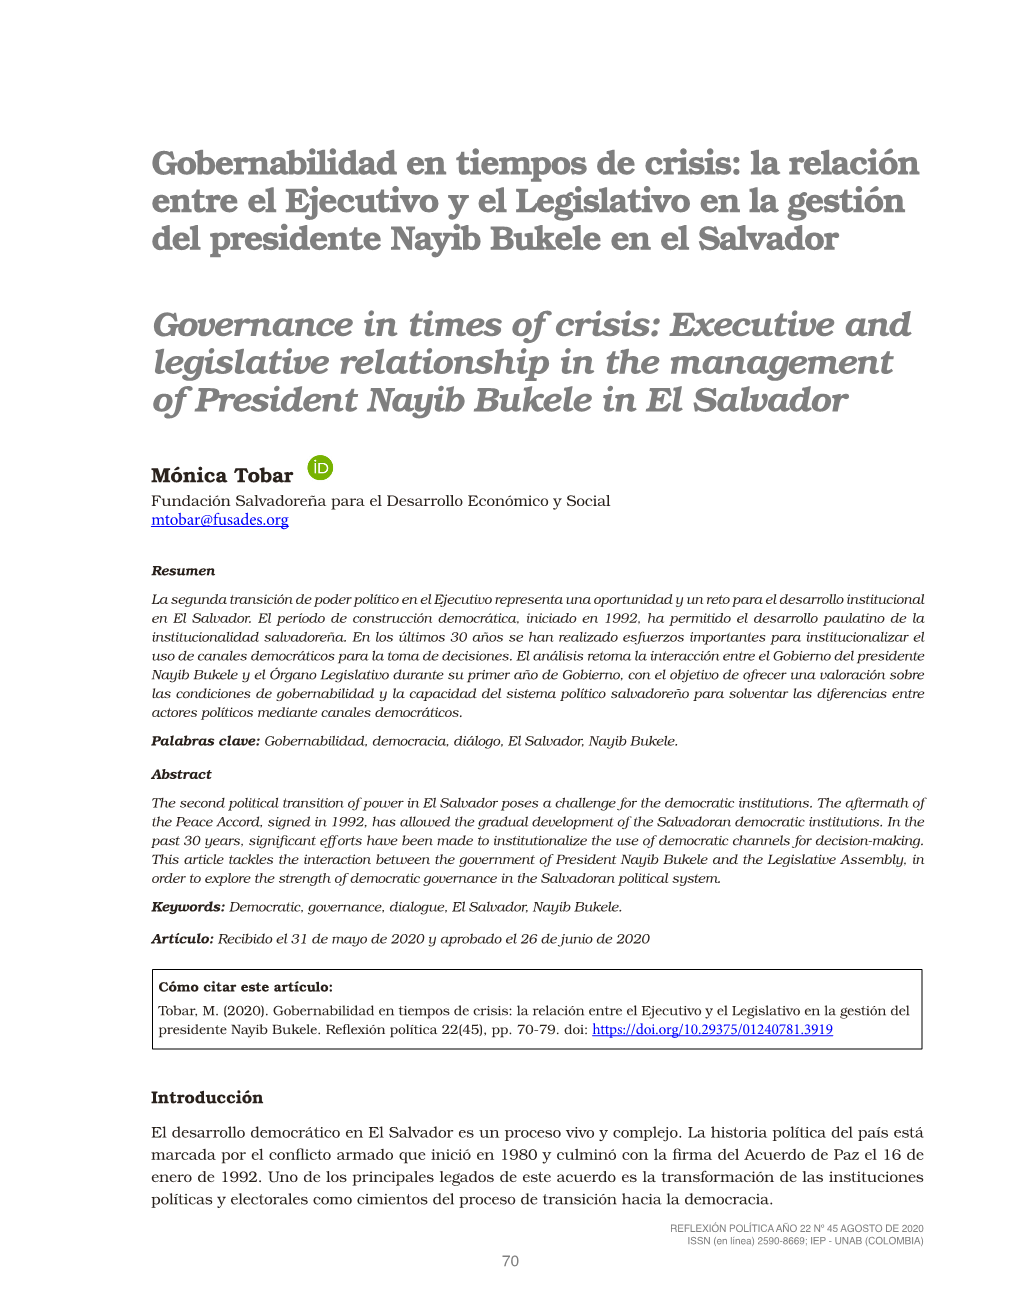 Gobernabilidad En Tiempos De Crisis: La Relación Entre El Ejecutivo Y El Legislativo En La Gestión Del Presidente Nayib Bukele En El Salvador